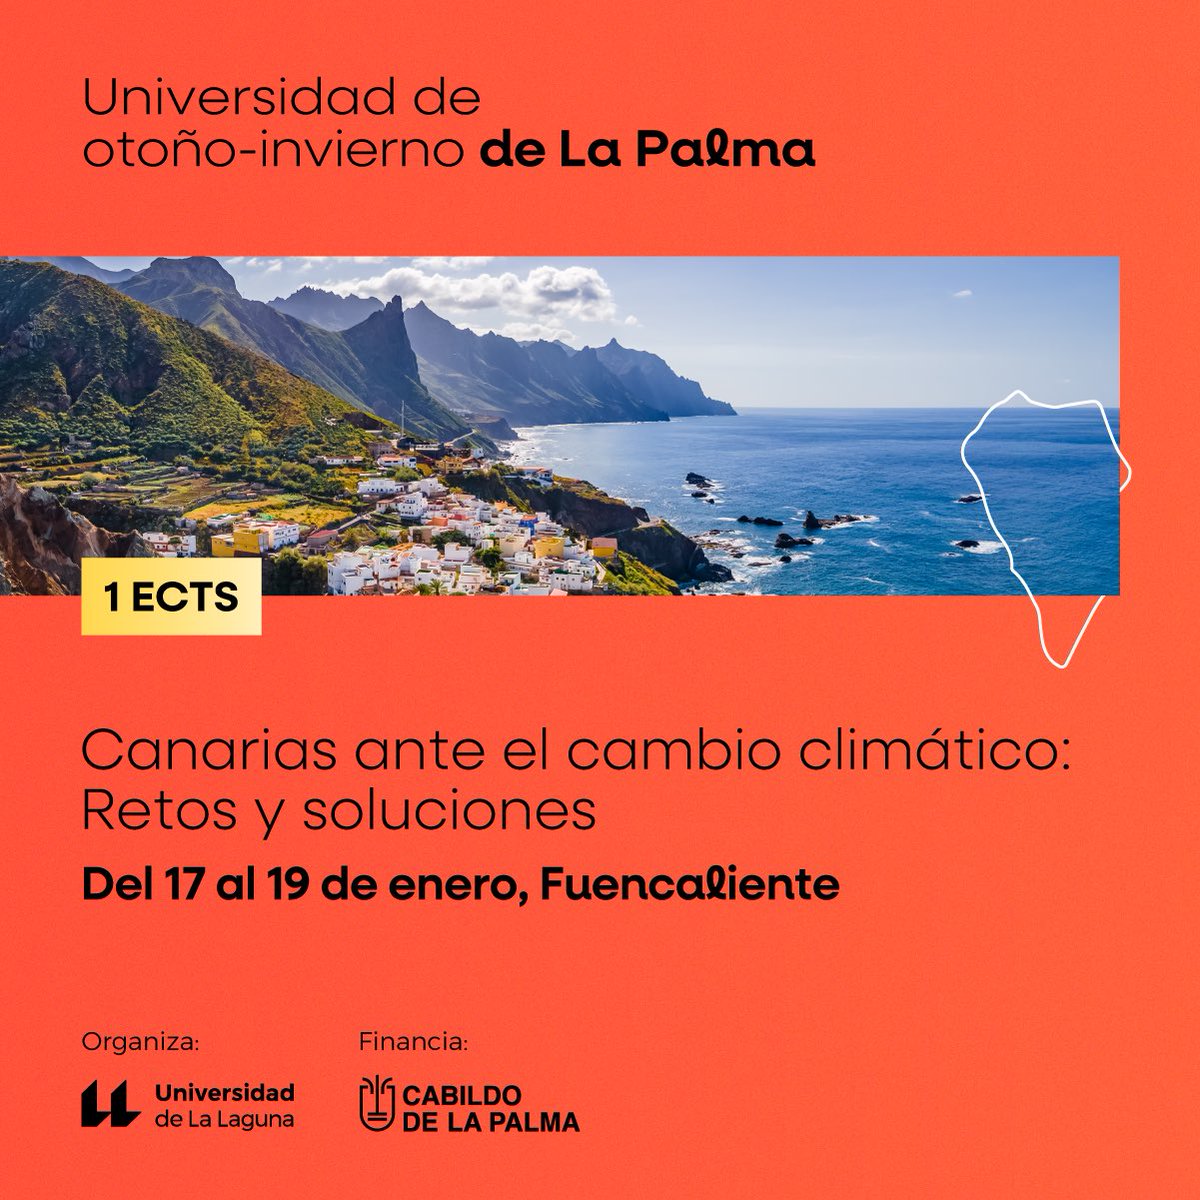 ¿Quieres aprender sobre cambio climático en Canarias? Te esperamos en Fuencaliente en la Universidad de Otoño-Invierno de La Palma. ¡Aprovecha las últimas plazas disponibles! 🔸Info y matrícula: ull.es/portal/agenda/…